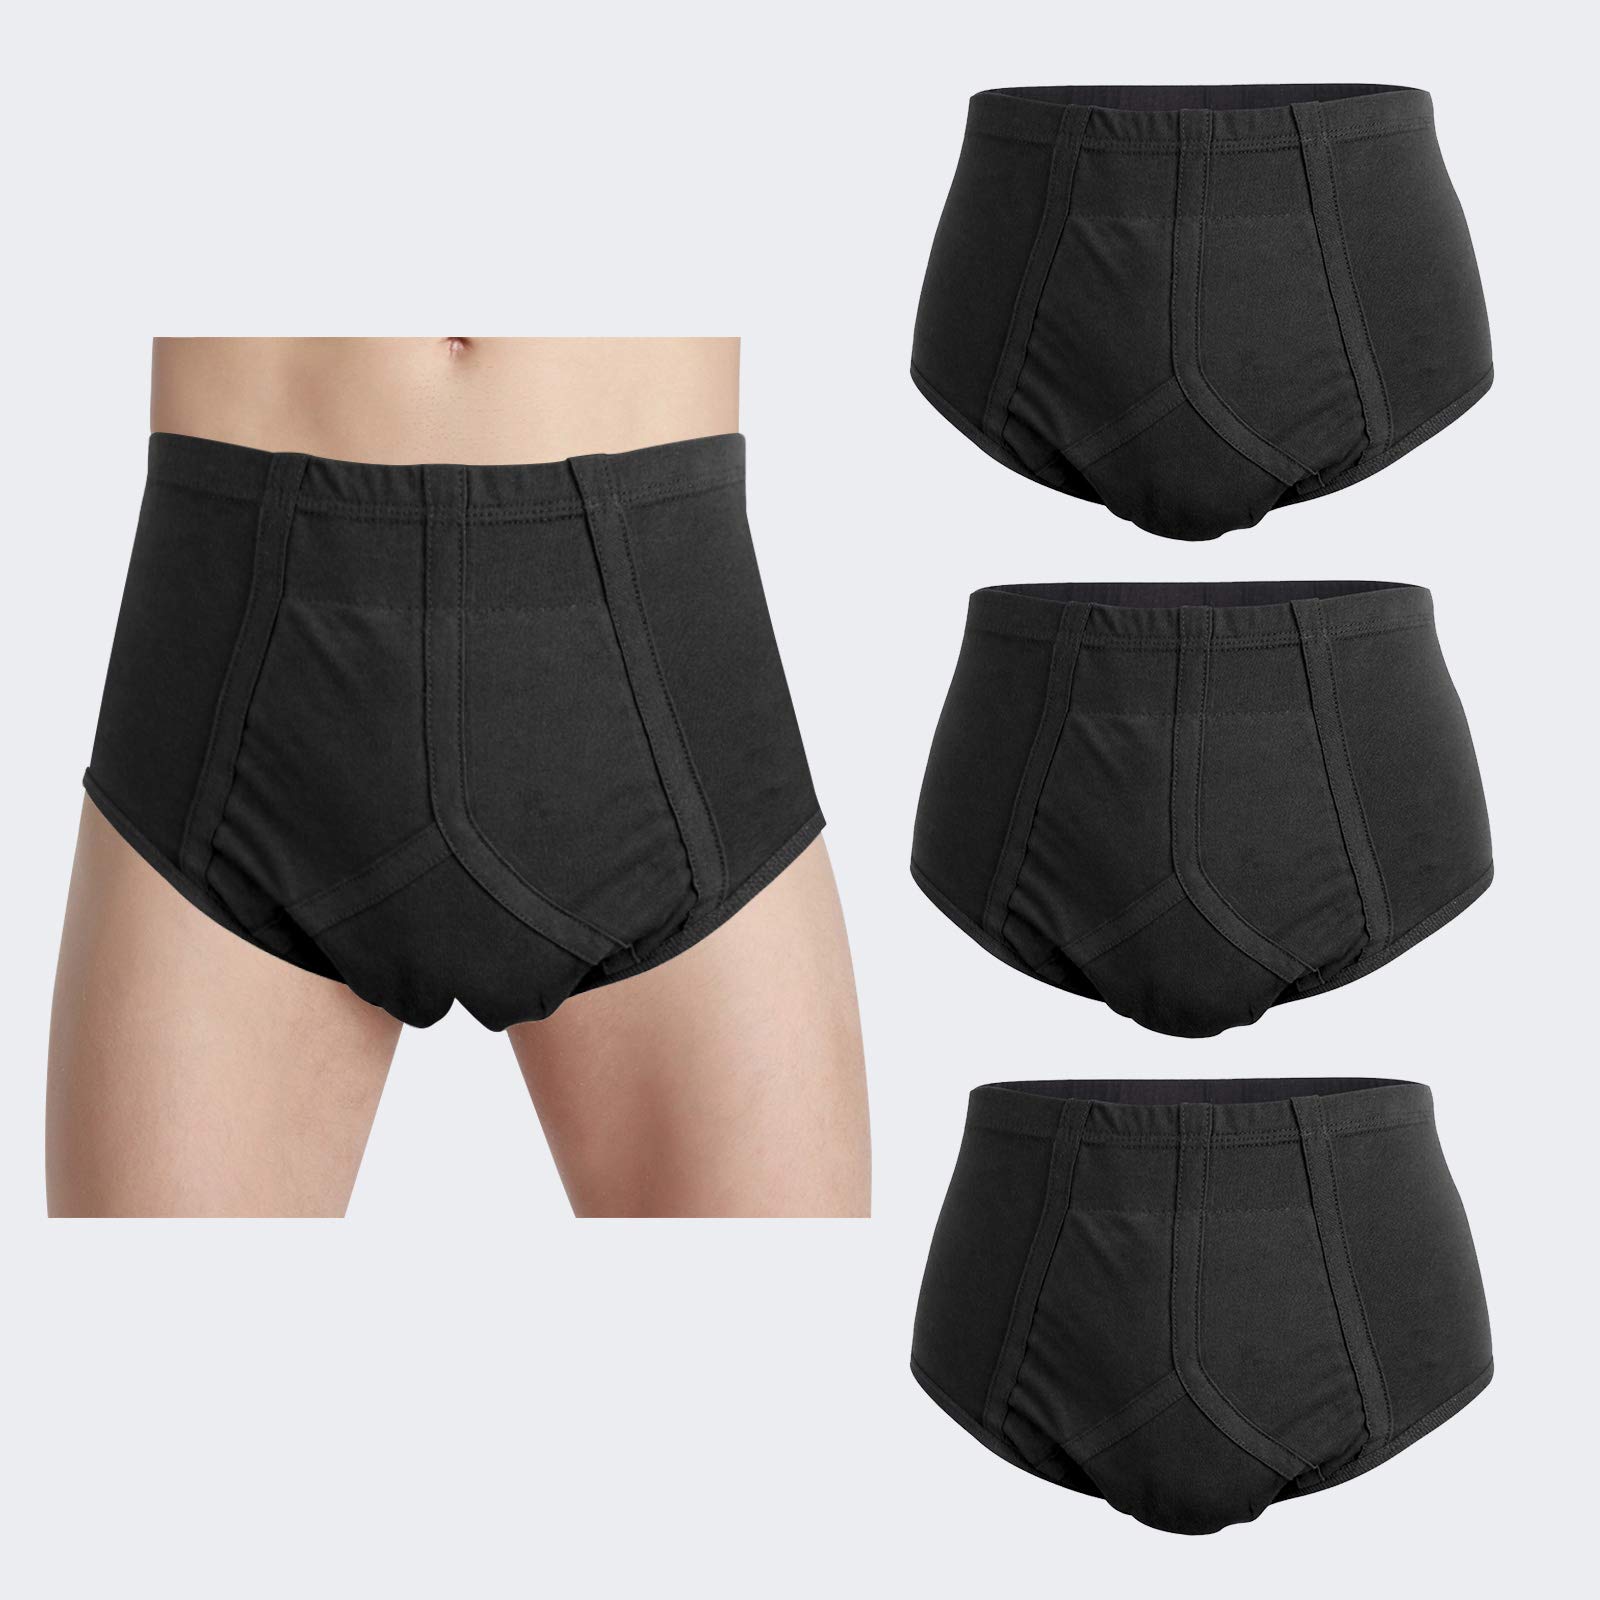 Men's Incontinence Underwear 3-Packs Bladder Control Briefs Washable Urinary  Underwear for Men Cotton Incontinence Briefs